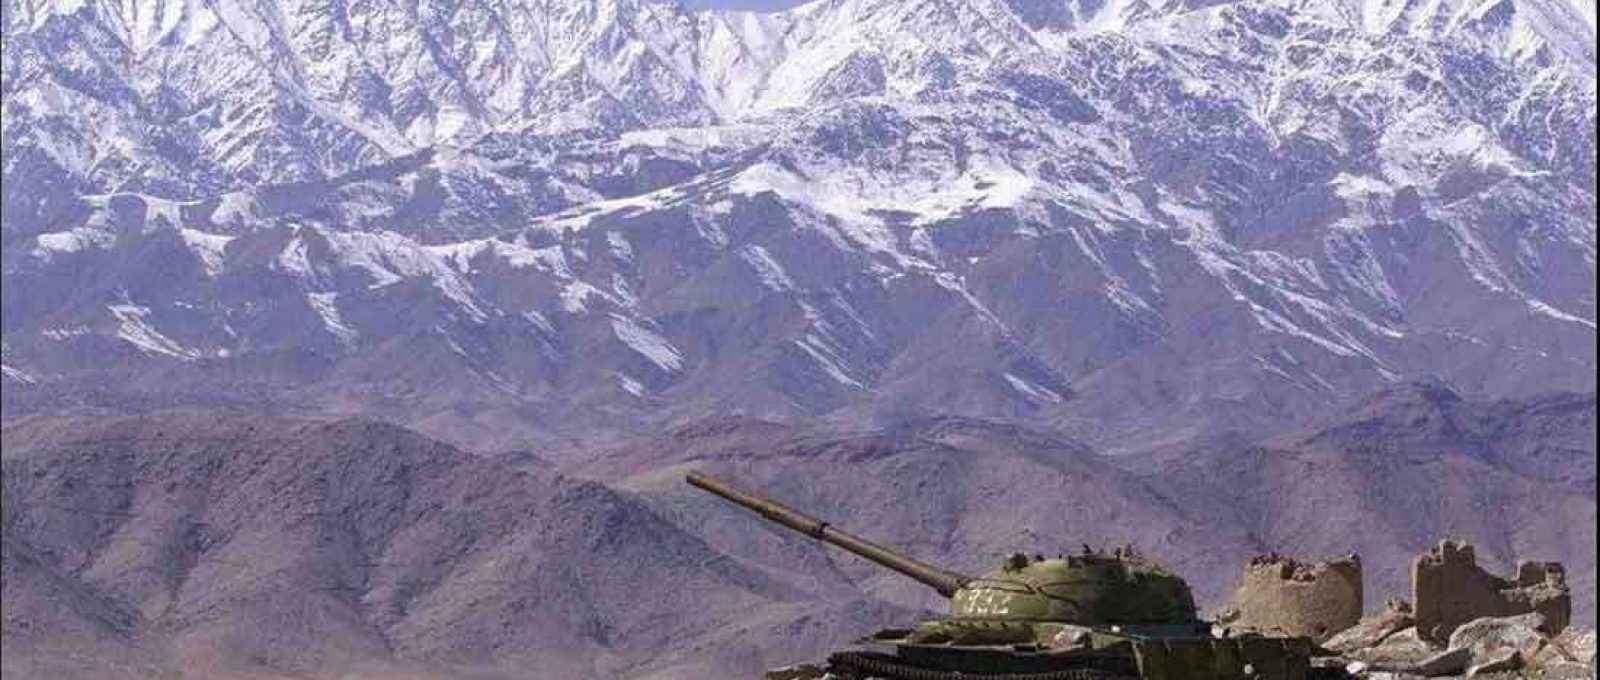 Um T-62 em posição de tiro em algum lugar nas montanhas Hindu Kush, no Afeganistão, entre 1984 e 1985 (Foto: Sergey Novikov, da 5º Cia. Aerotransportada do Exército Vermelho/Wikimedia Commons).